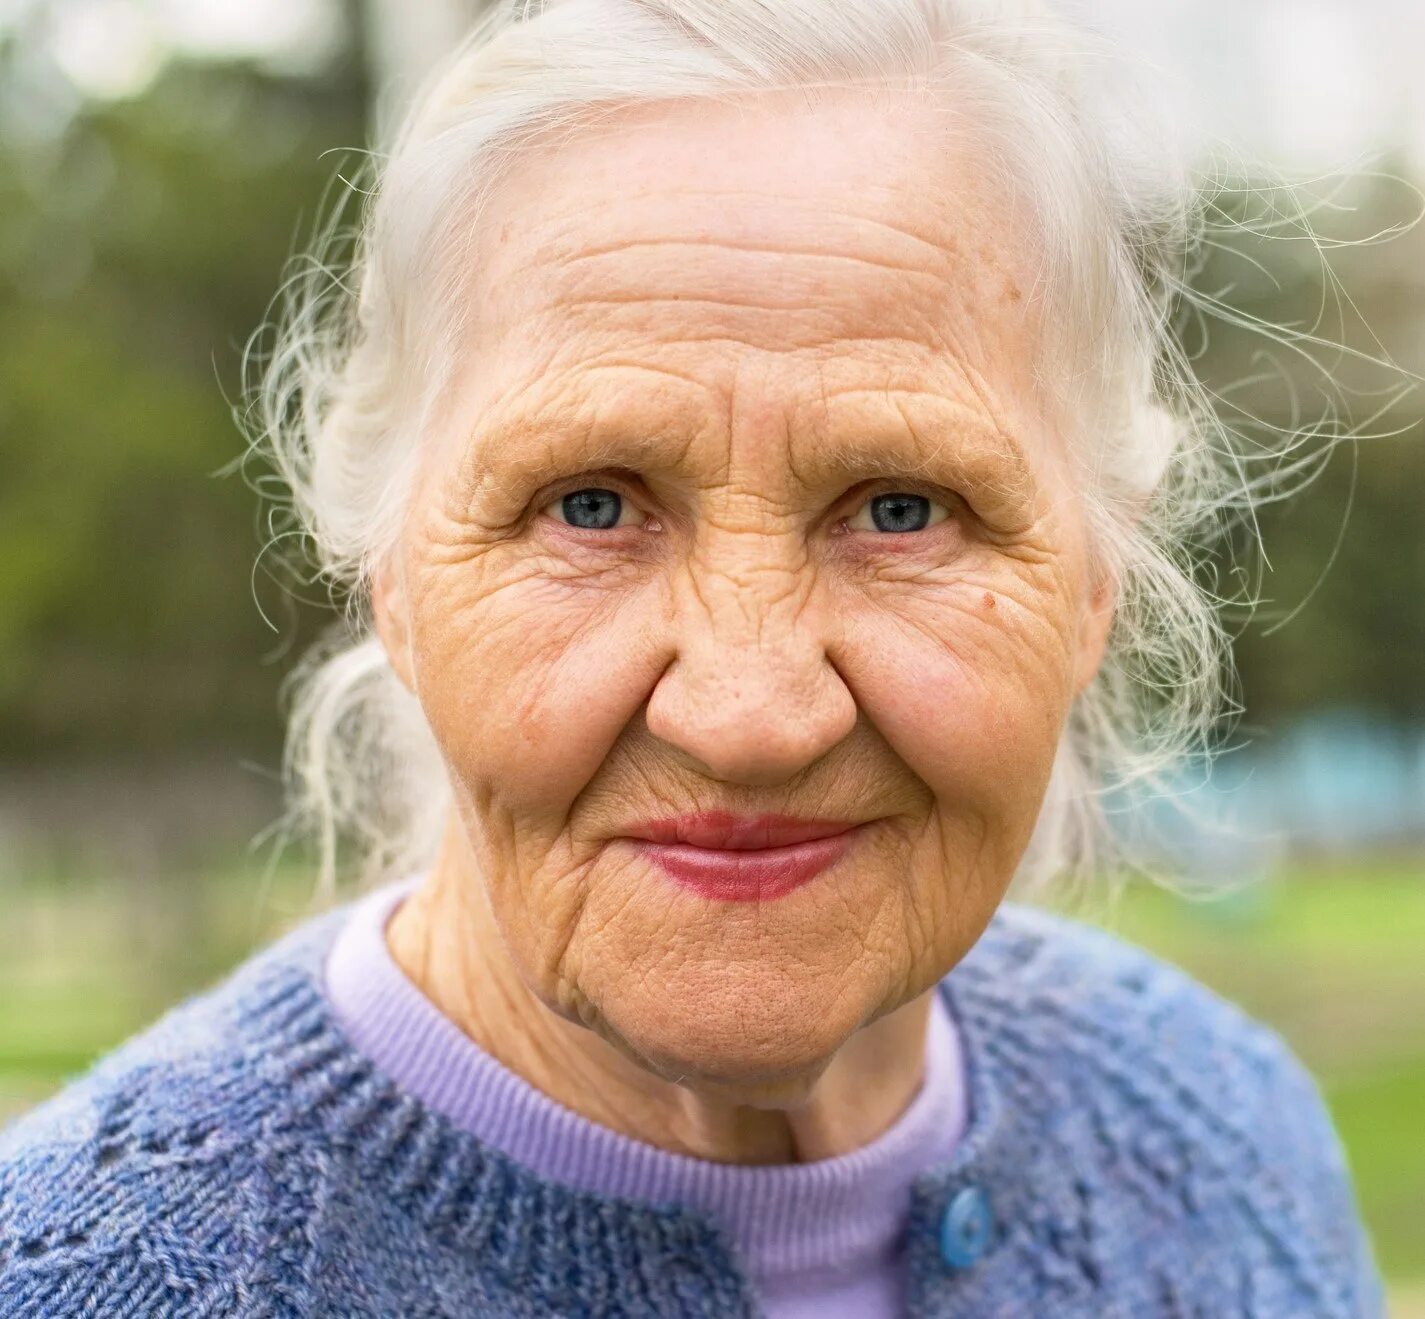 Лицо бабушки. Старая женщина. Старое лицо. Лицо пожилой женщины. Пожилая прелесть